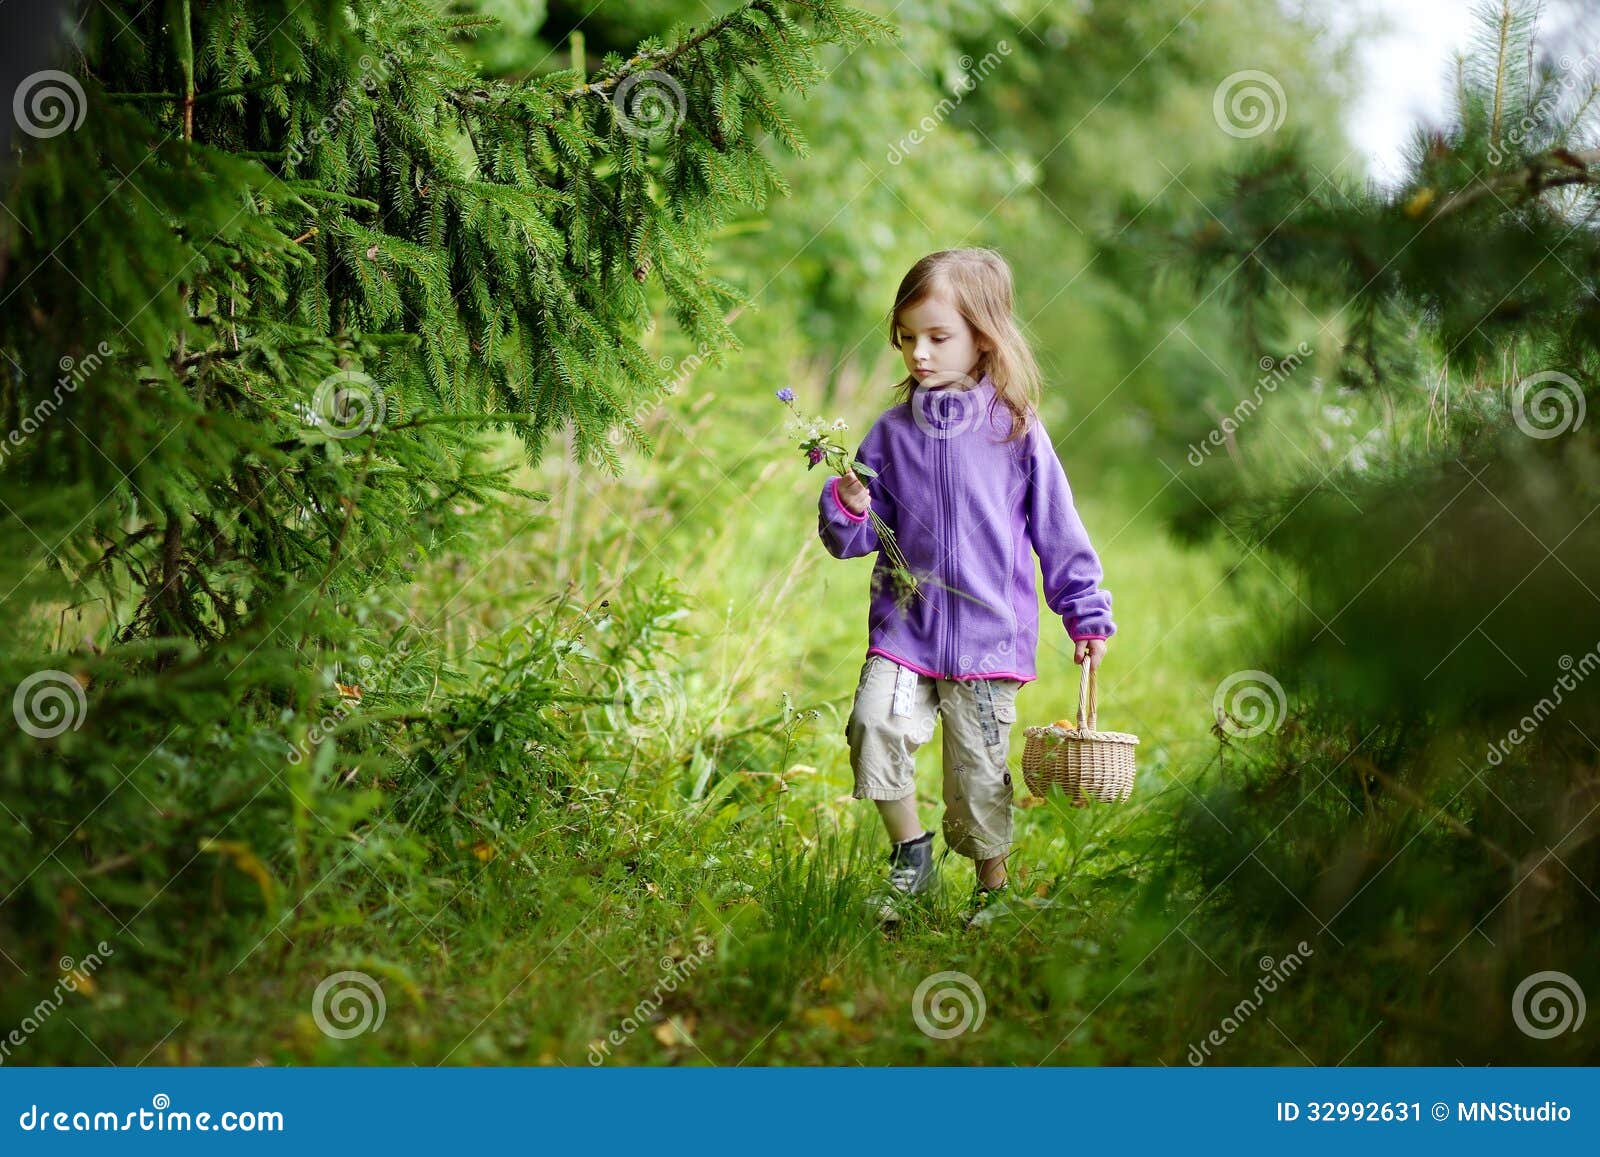 Включи девочку в лесу. Девочка гуляет в лесу. Маленькая девка в лесу. Прогулка в лесу дети лето. Маленький ребенок в лесу.